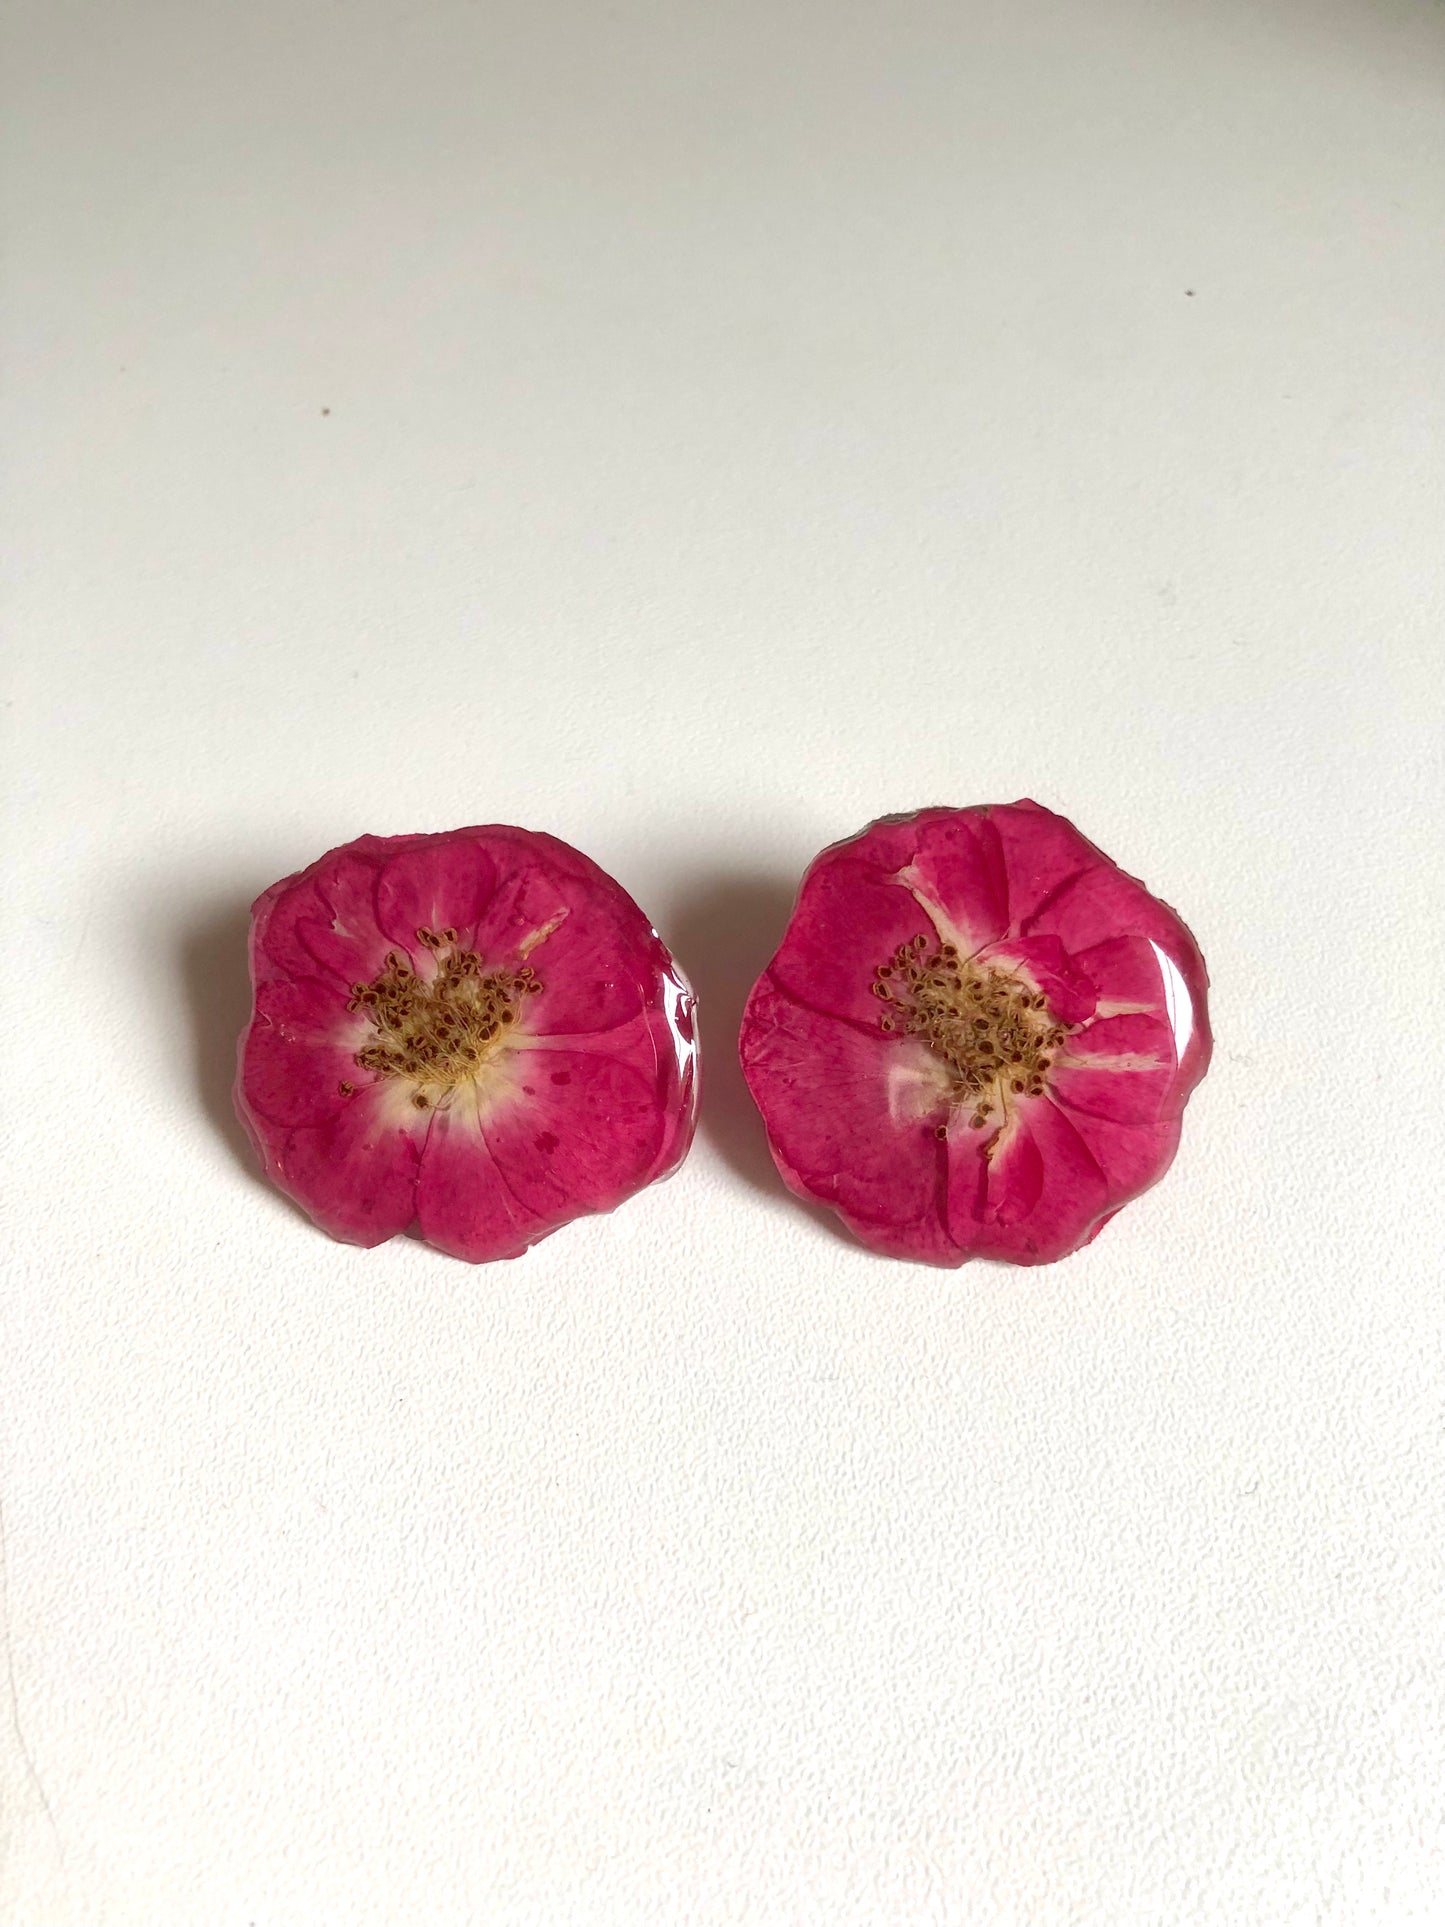 Real rose stud earrings